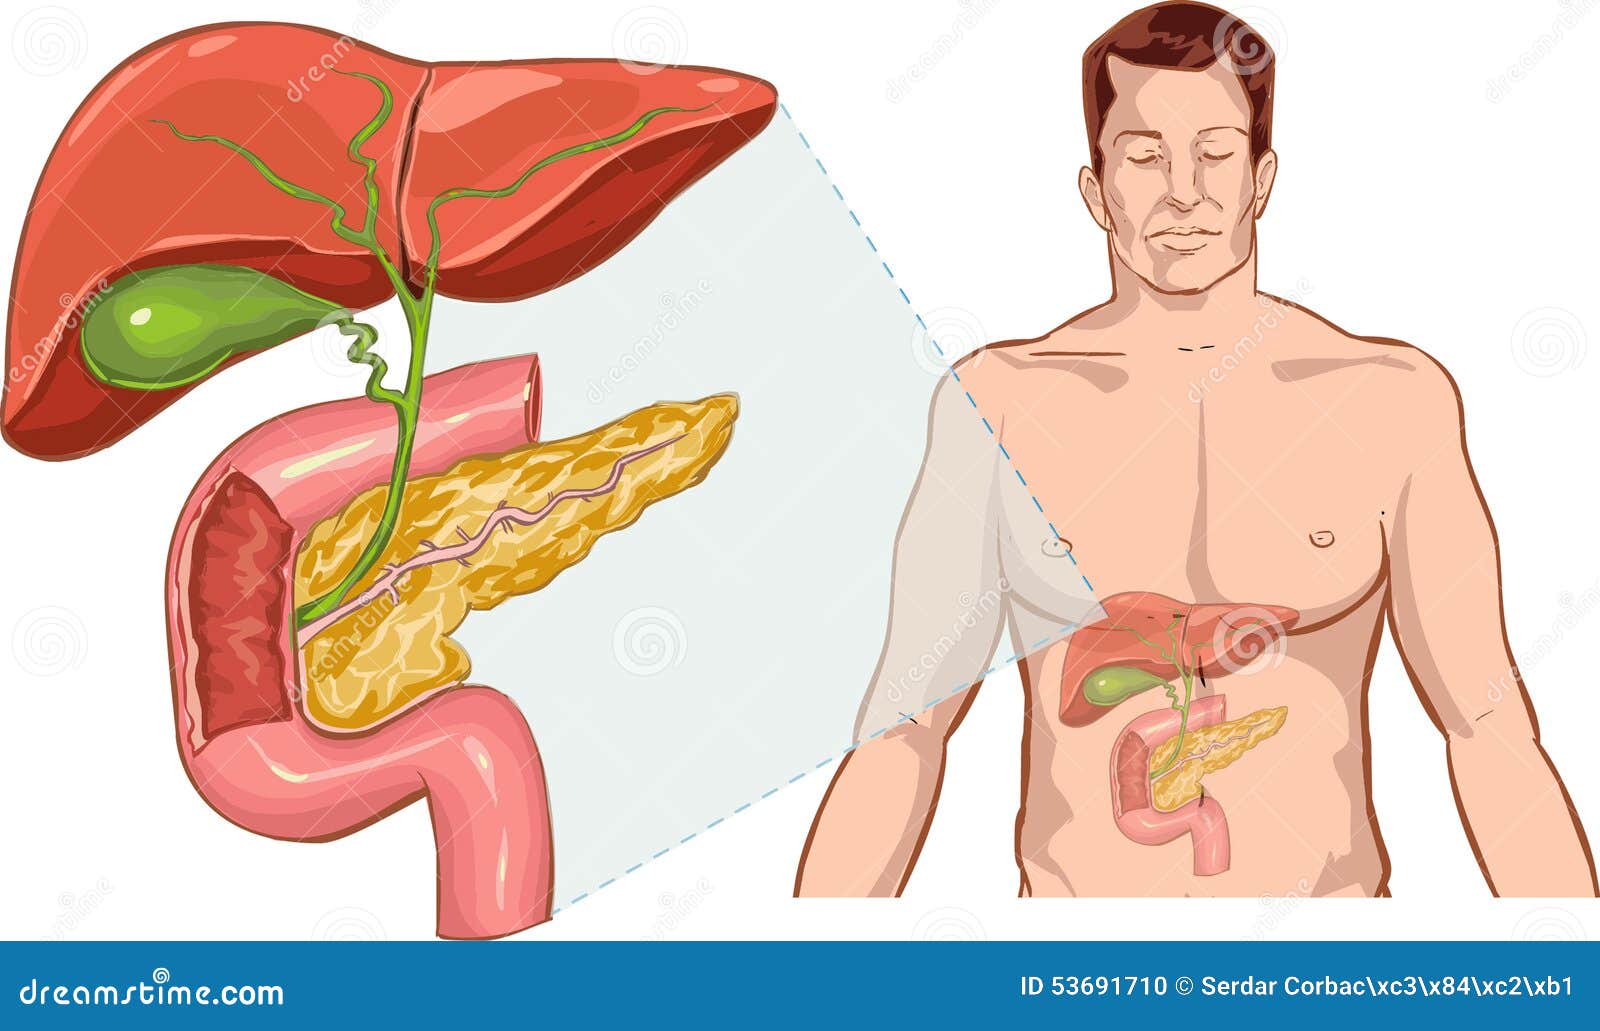 Печень на теле человека. Печень анатомия человека. Внутренние органы печень.